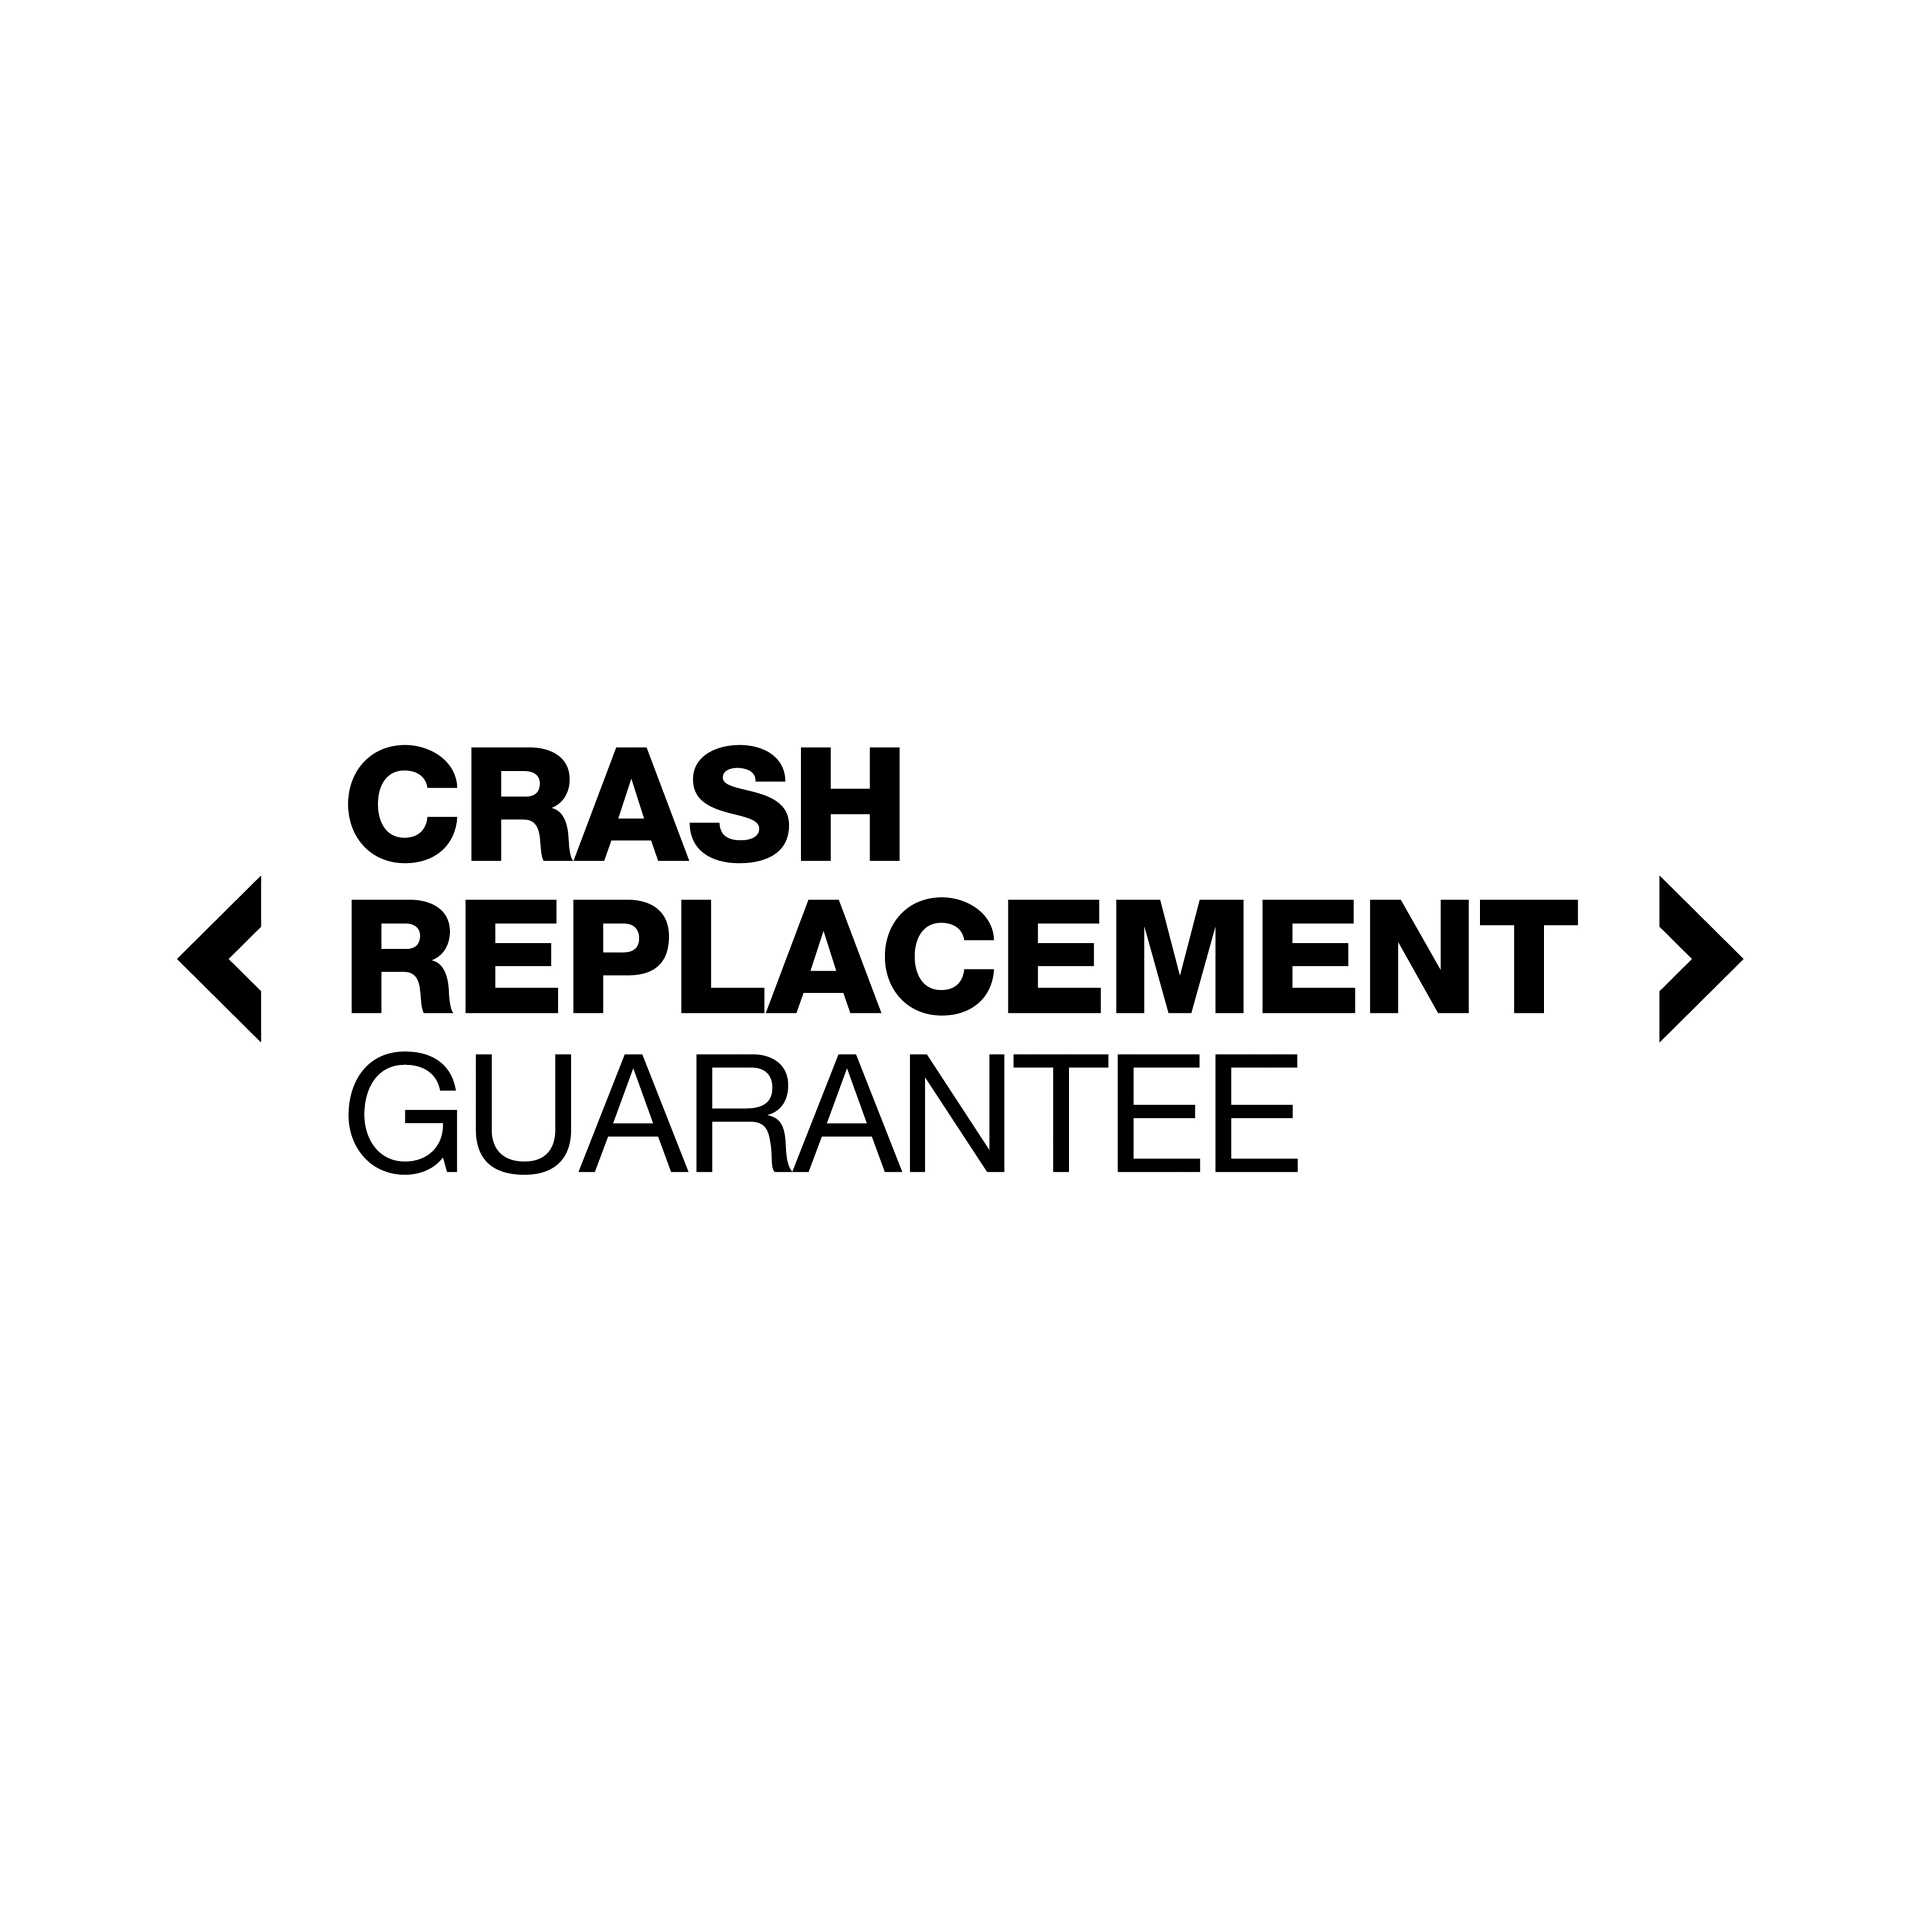 Crash Replacement Guarantee